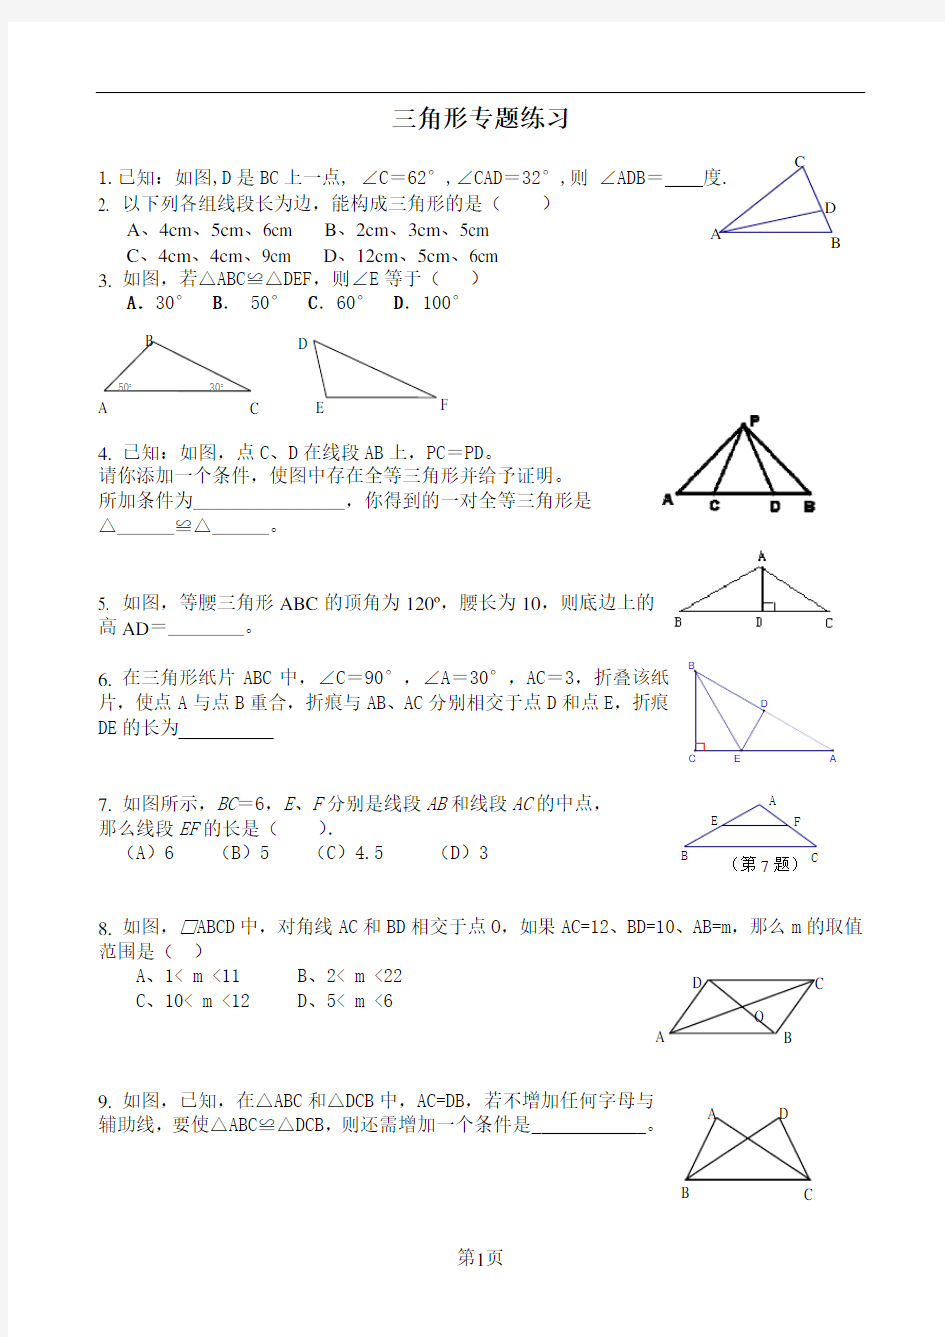 (完整版)初中数学三角形专题练习